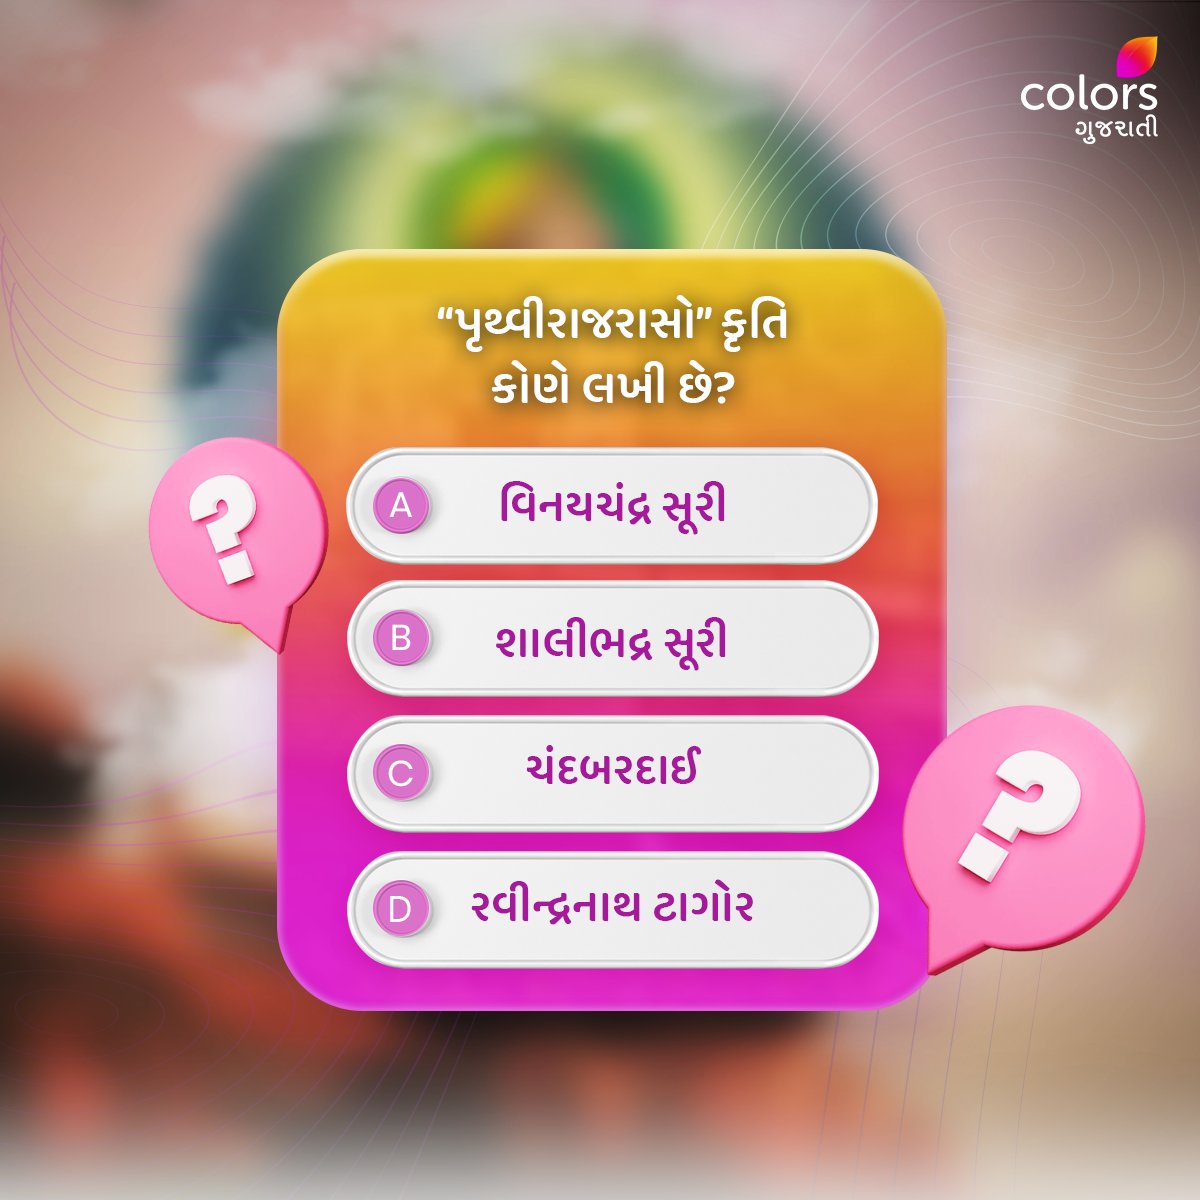 જો તમને આ કૃતિના લેખકનું નામ ખબર હોય, તો Comment માં જણાવો.👇

#Colorsgujarati #Gujarat #Quiz #Facts #generalquiz